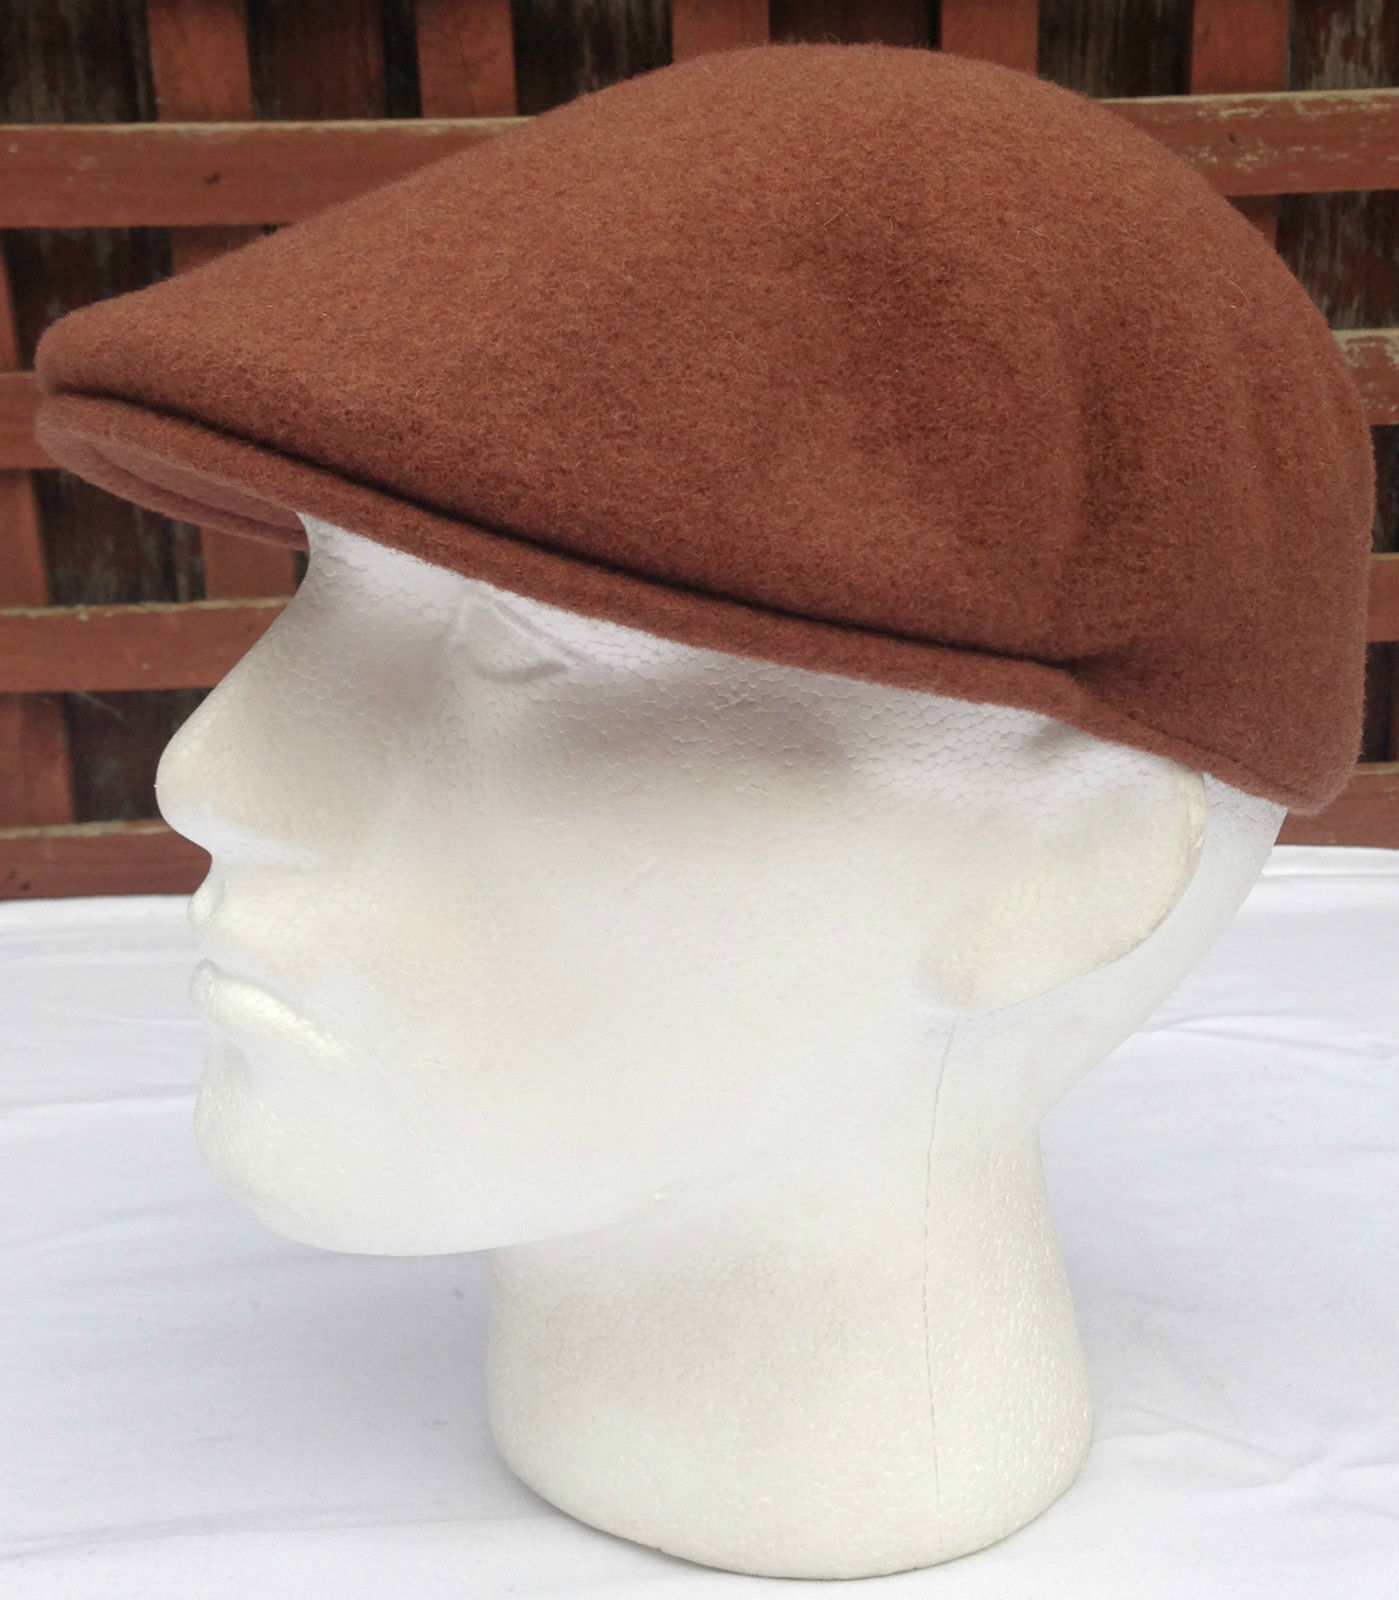 KANGOL 504 Wool Ivy Cap Mens Warm Winter Flat Classic Hat 0258BC SXXL